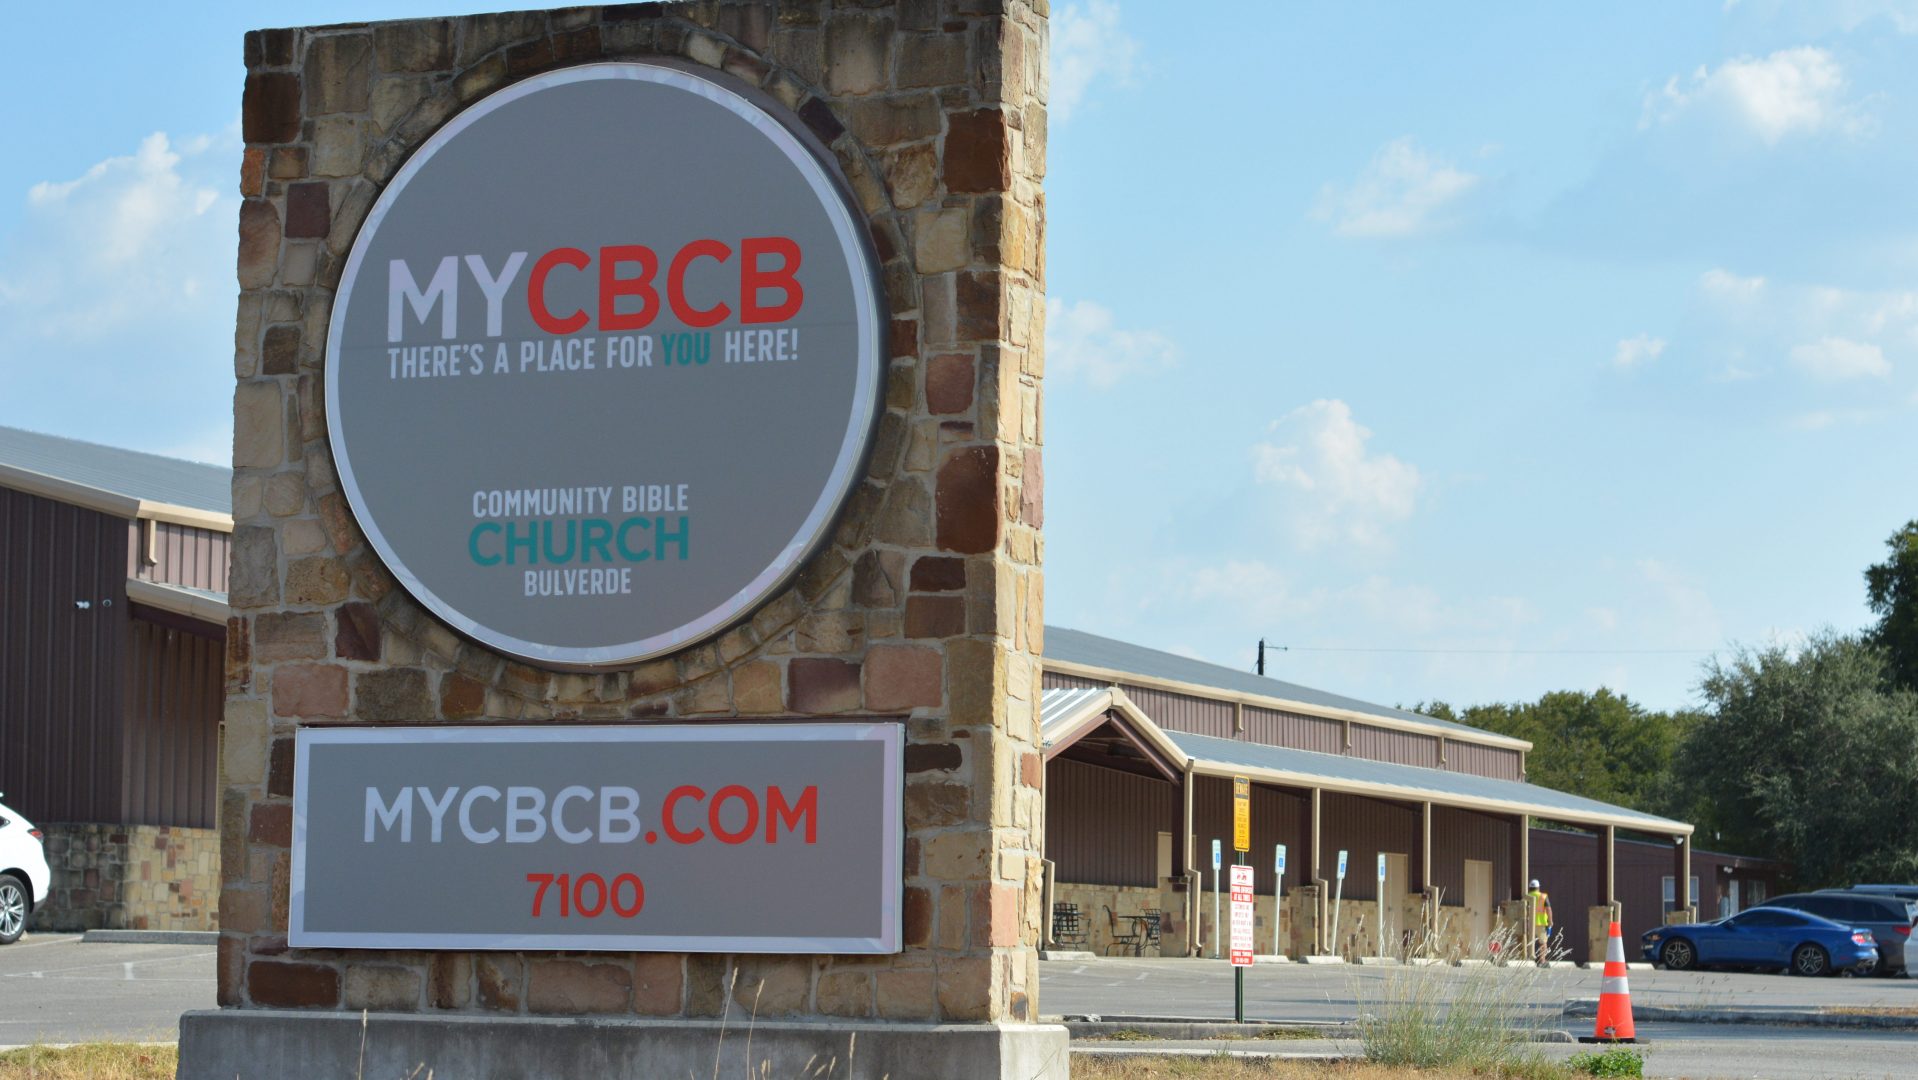 Mycbcb's street sign